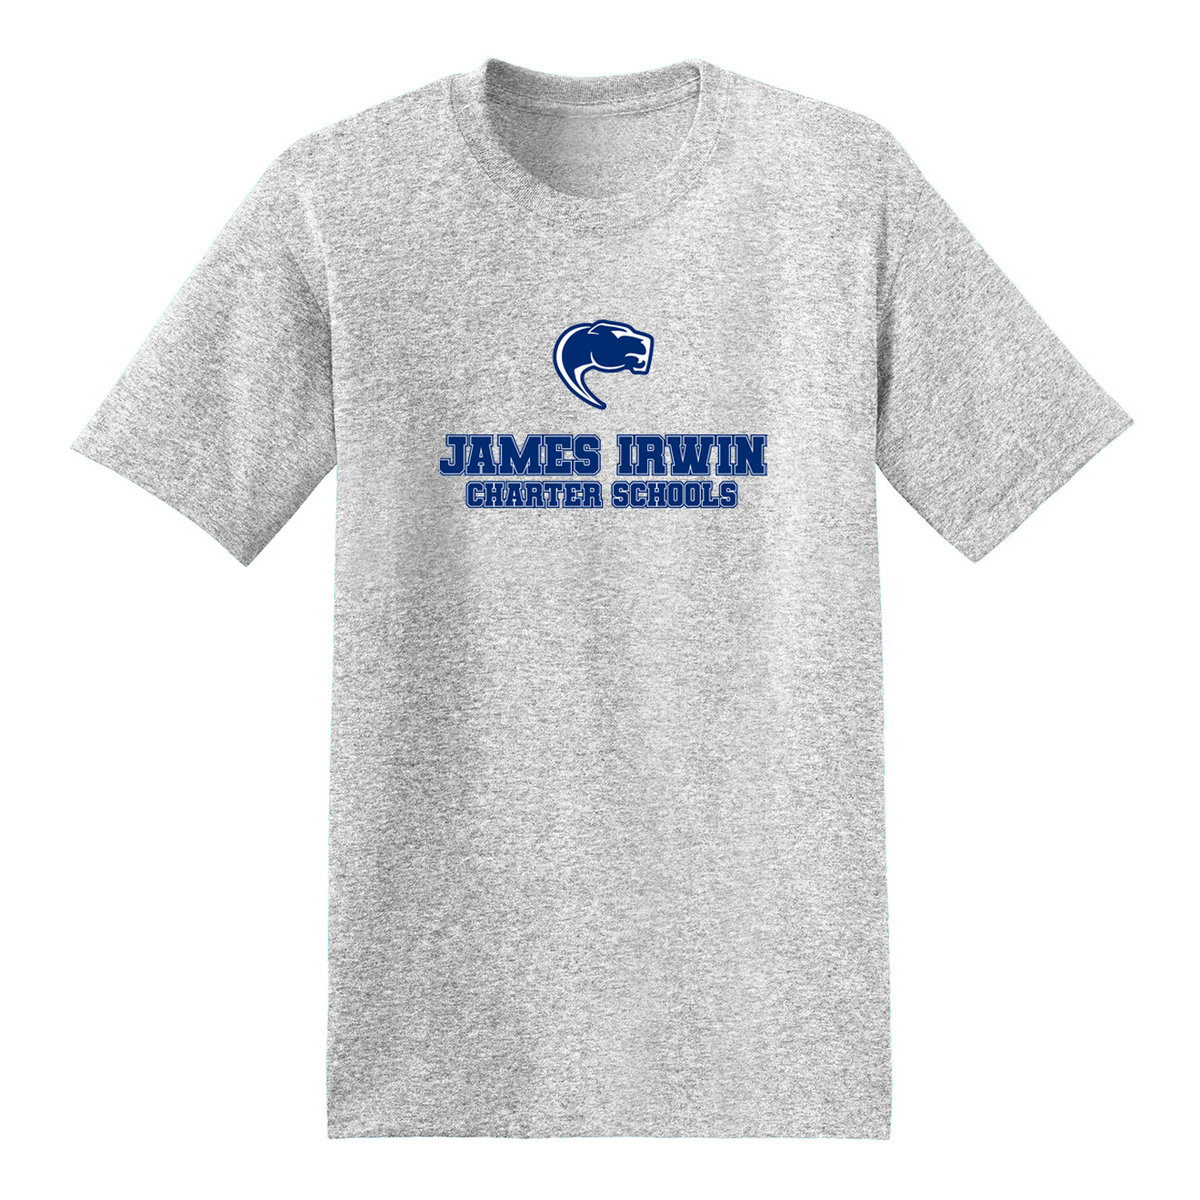 James Irwin Charter Schools T-Shirt